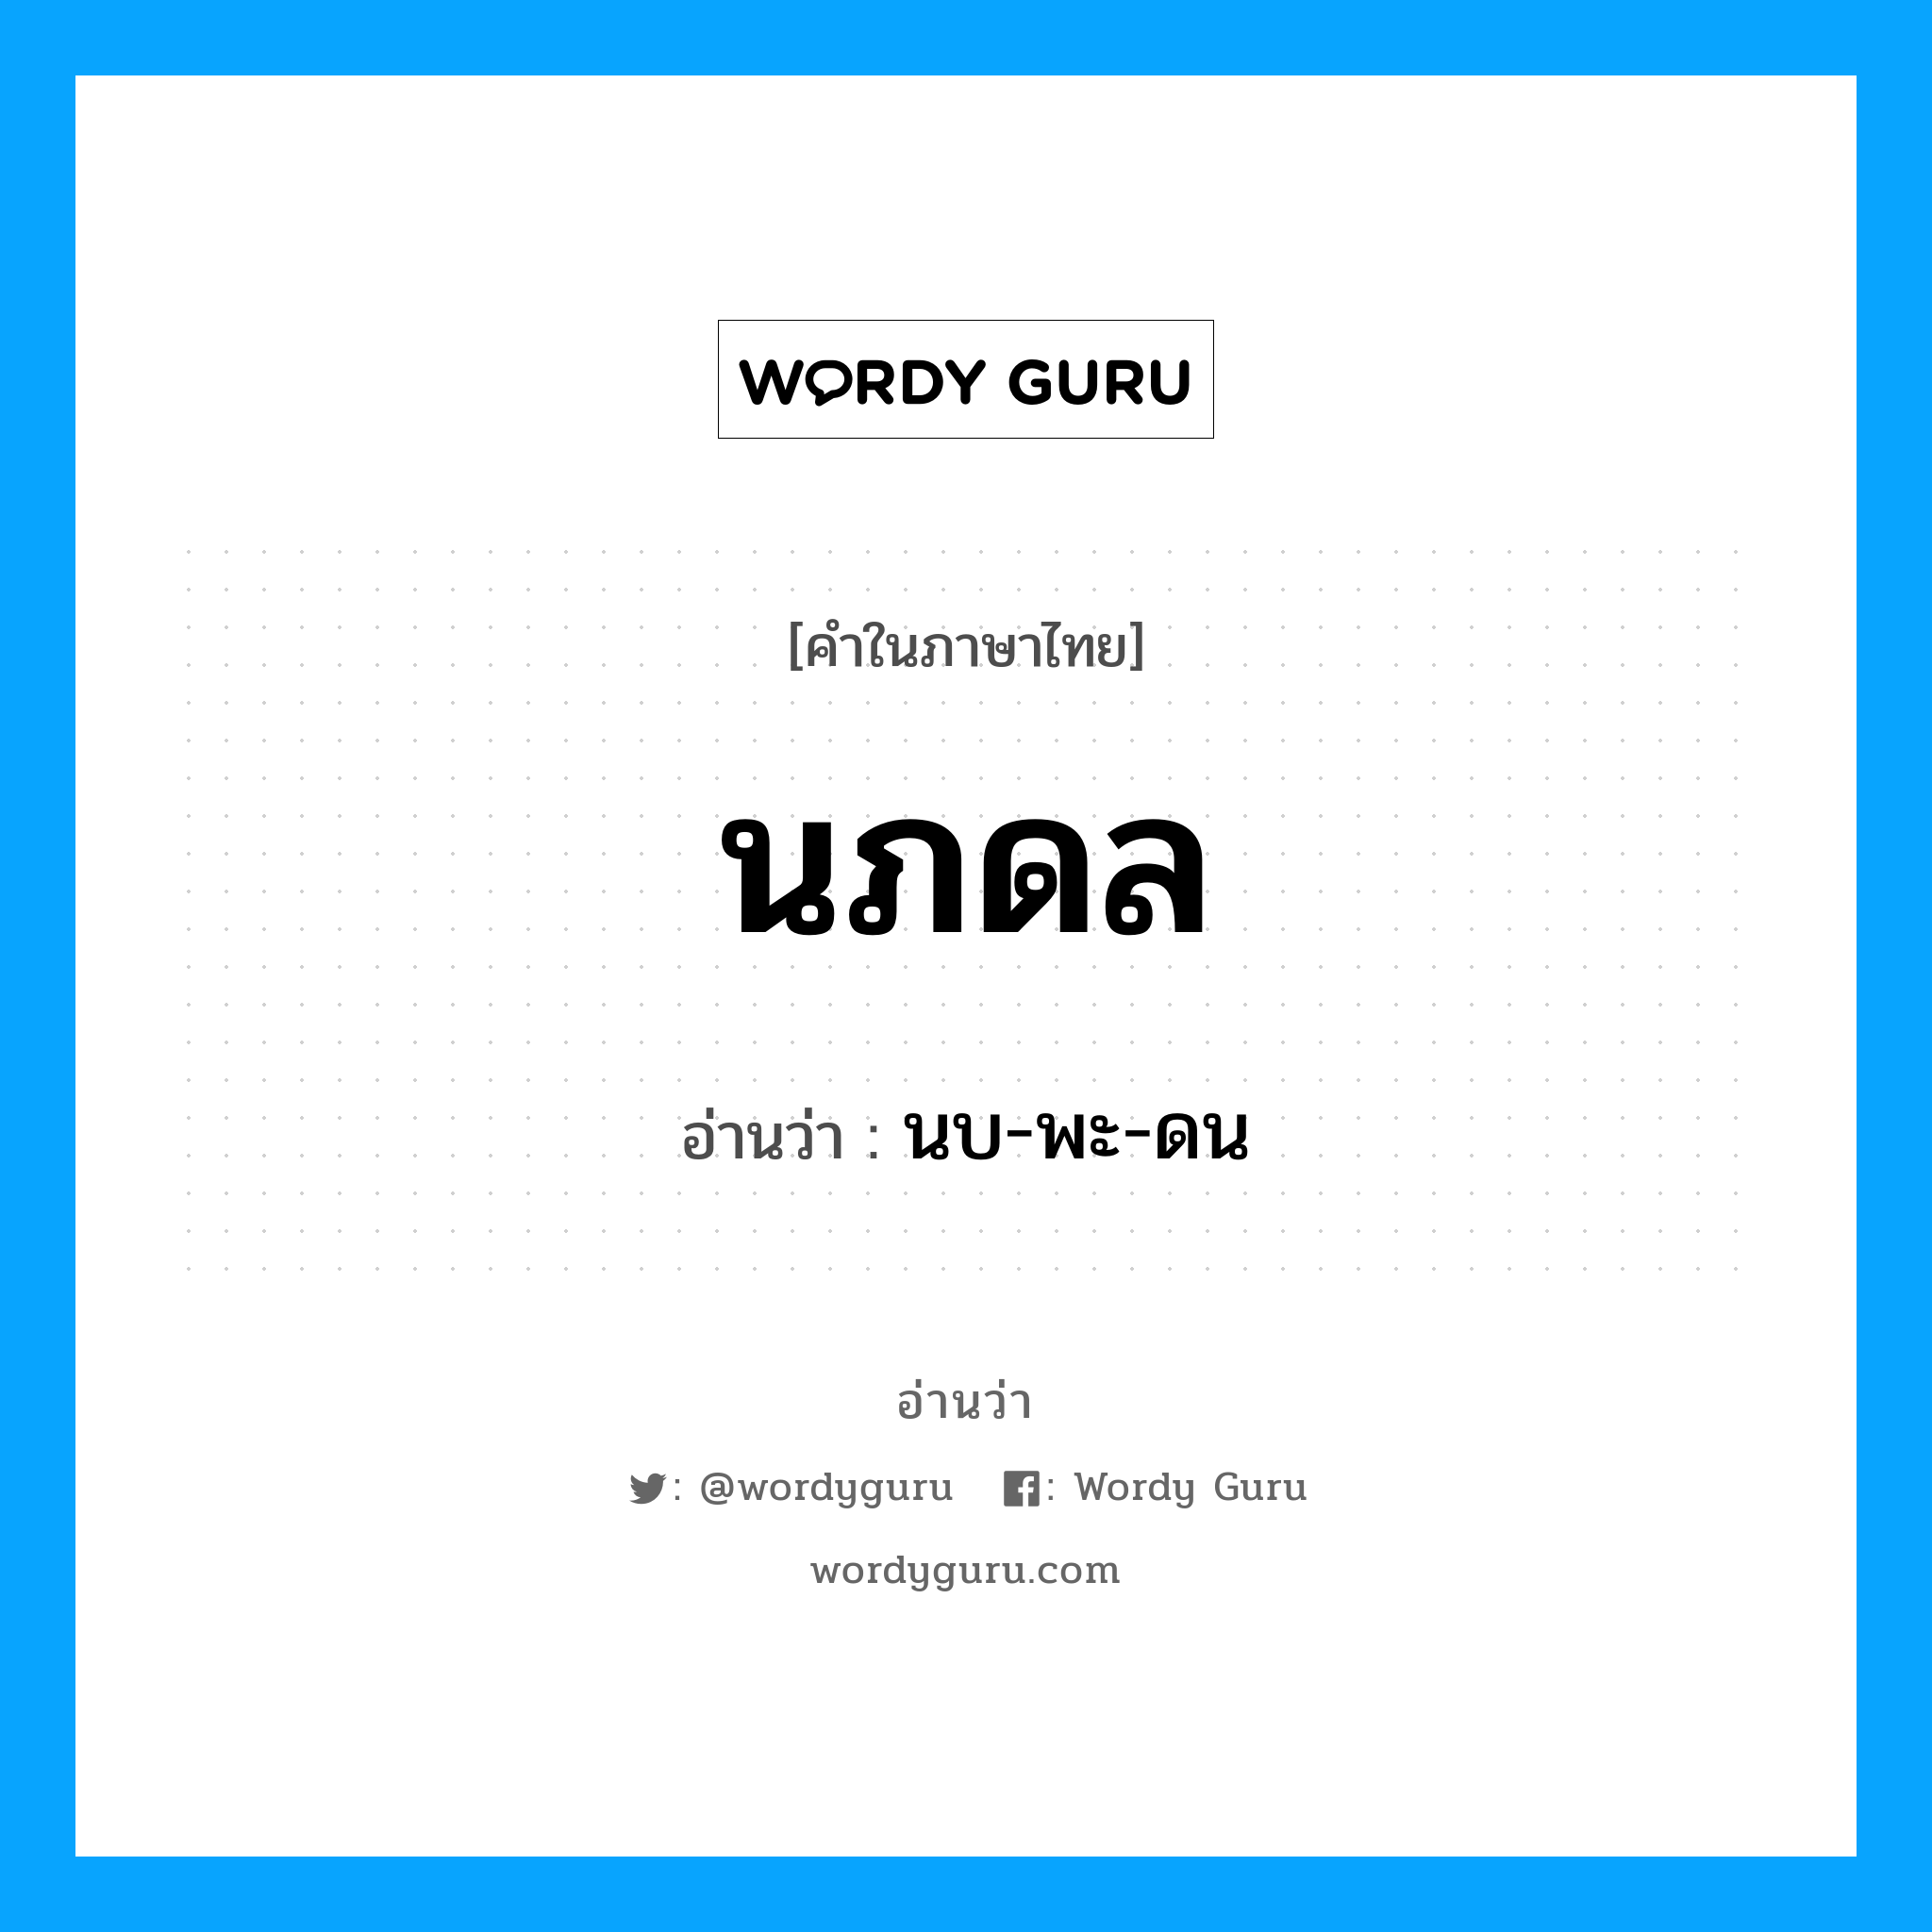 นบ-พะ-ดน เป็นคำอ่านของคำไหน?, คำในภาษาไทย นบ-พะ-ดน อ่านว่า นภดล